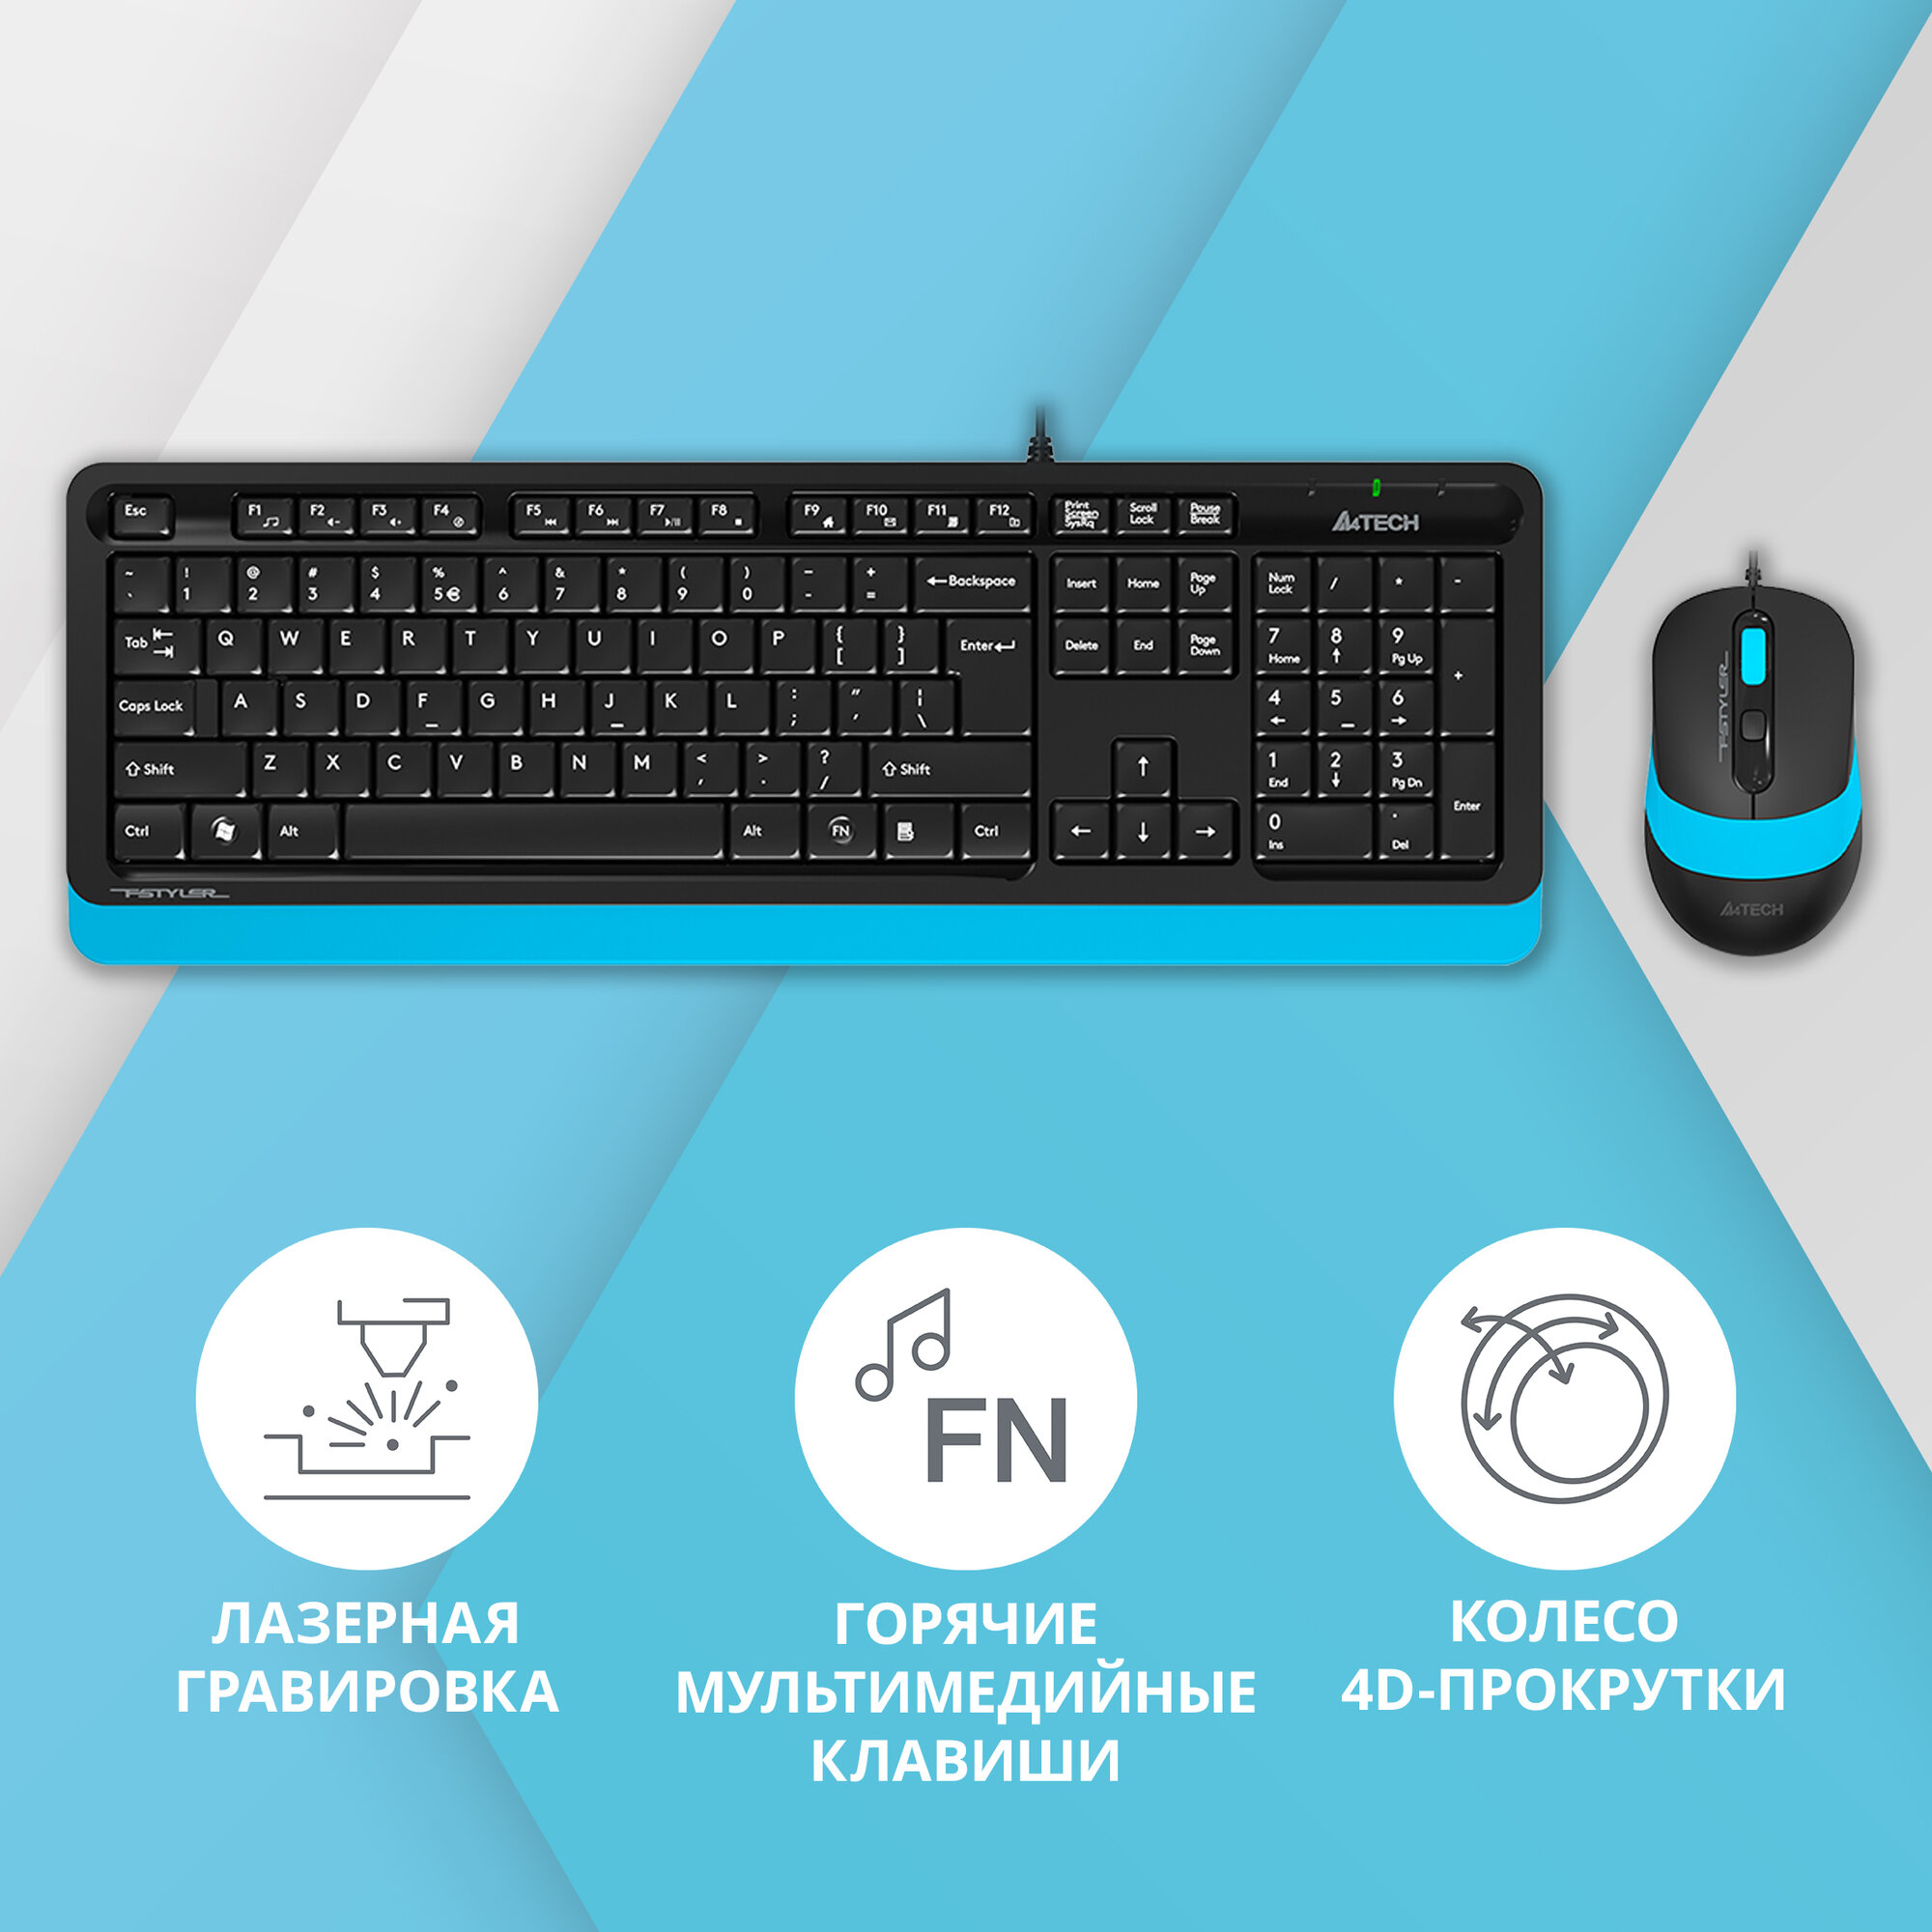 Клавиатура + мышь A4 Fstyler F1010 клав: черный/синий мышь: черный/синий USB Multimedia